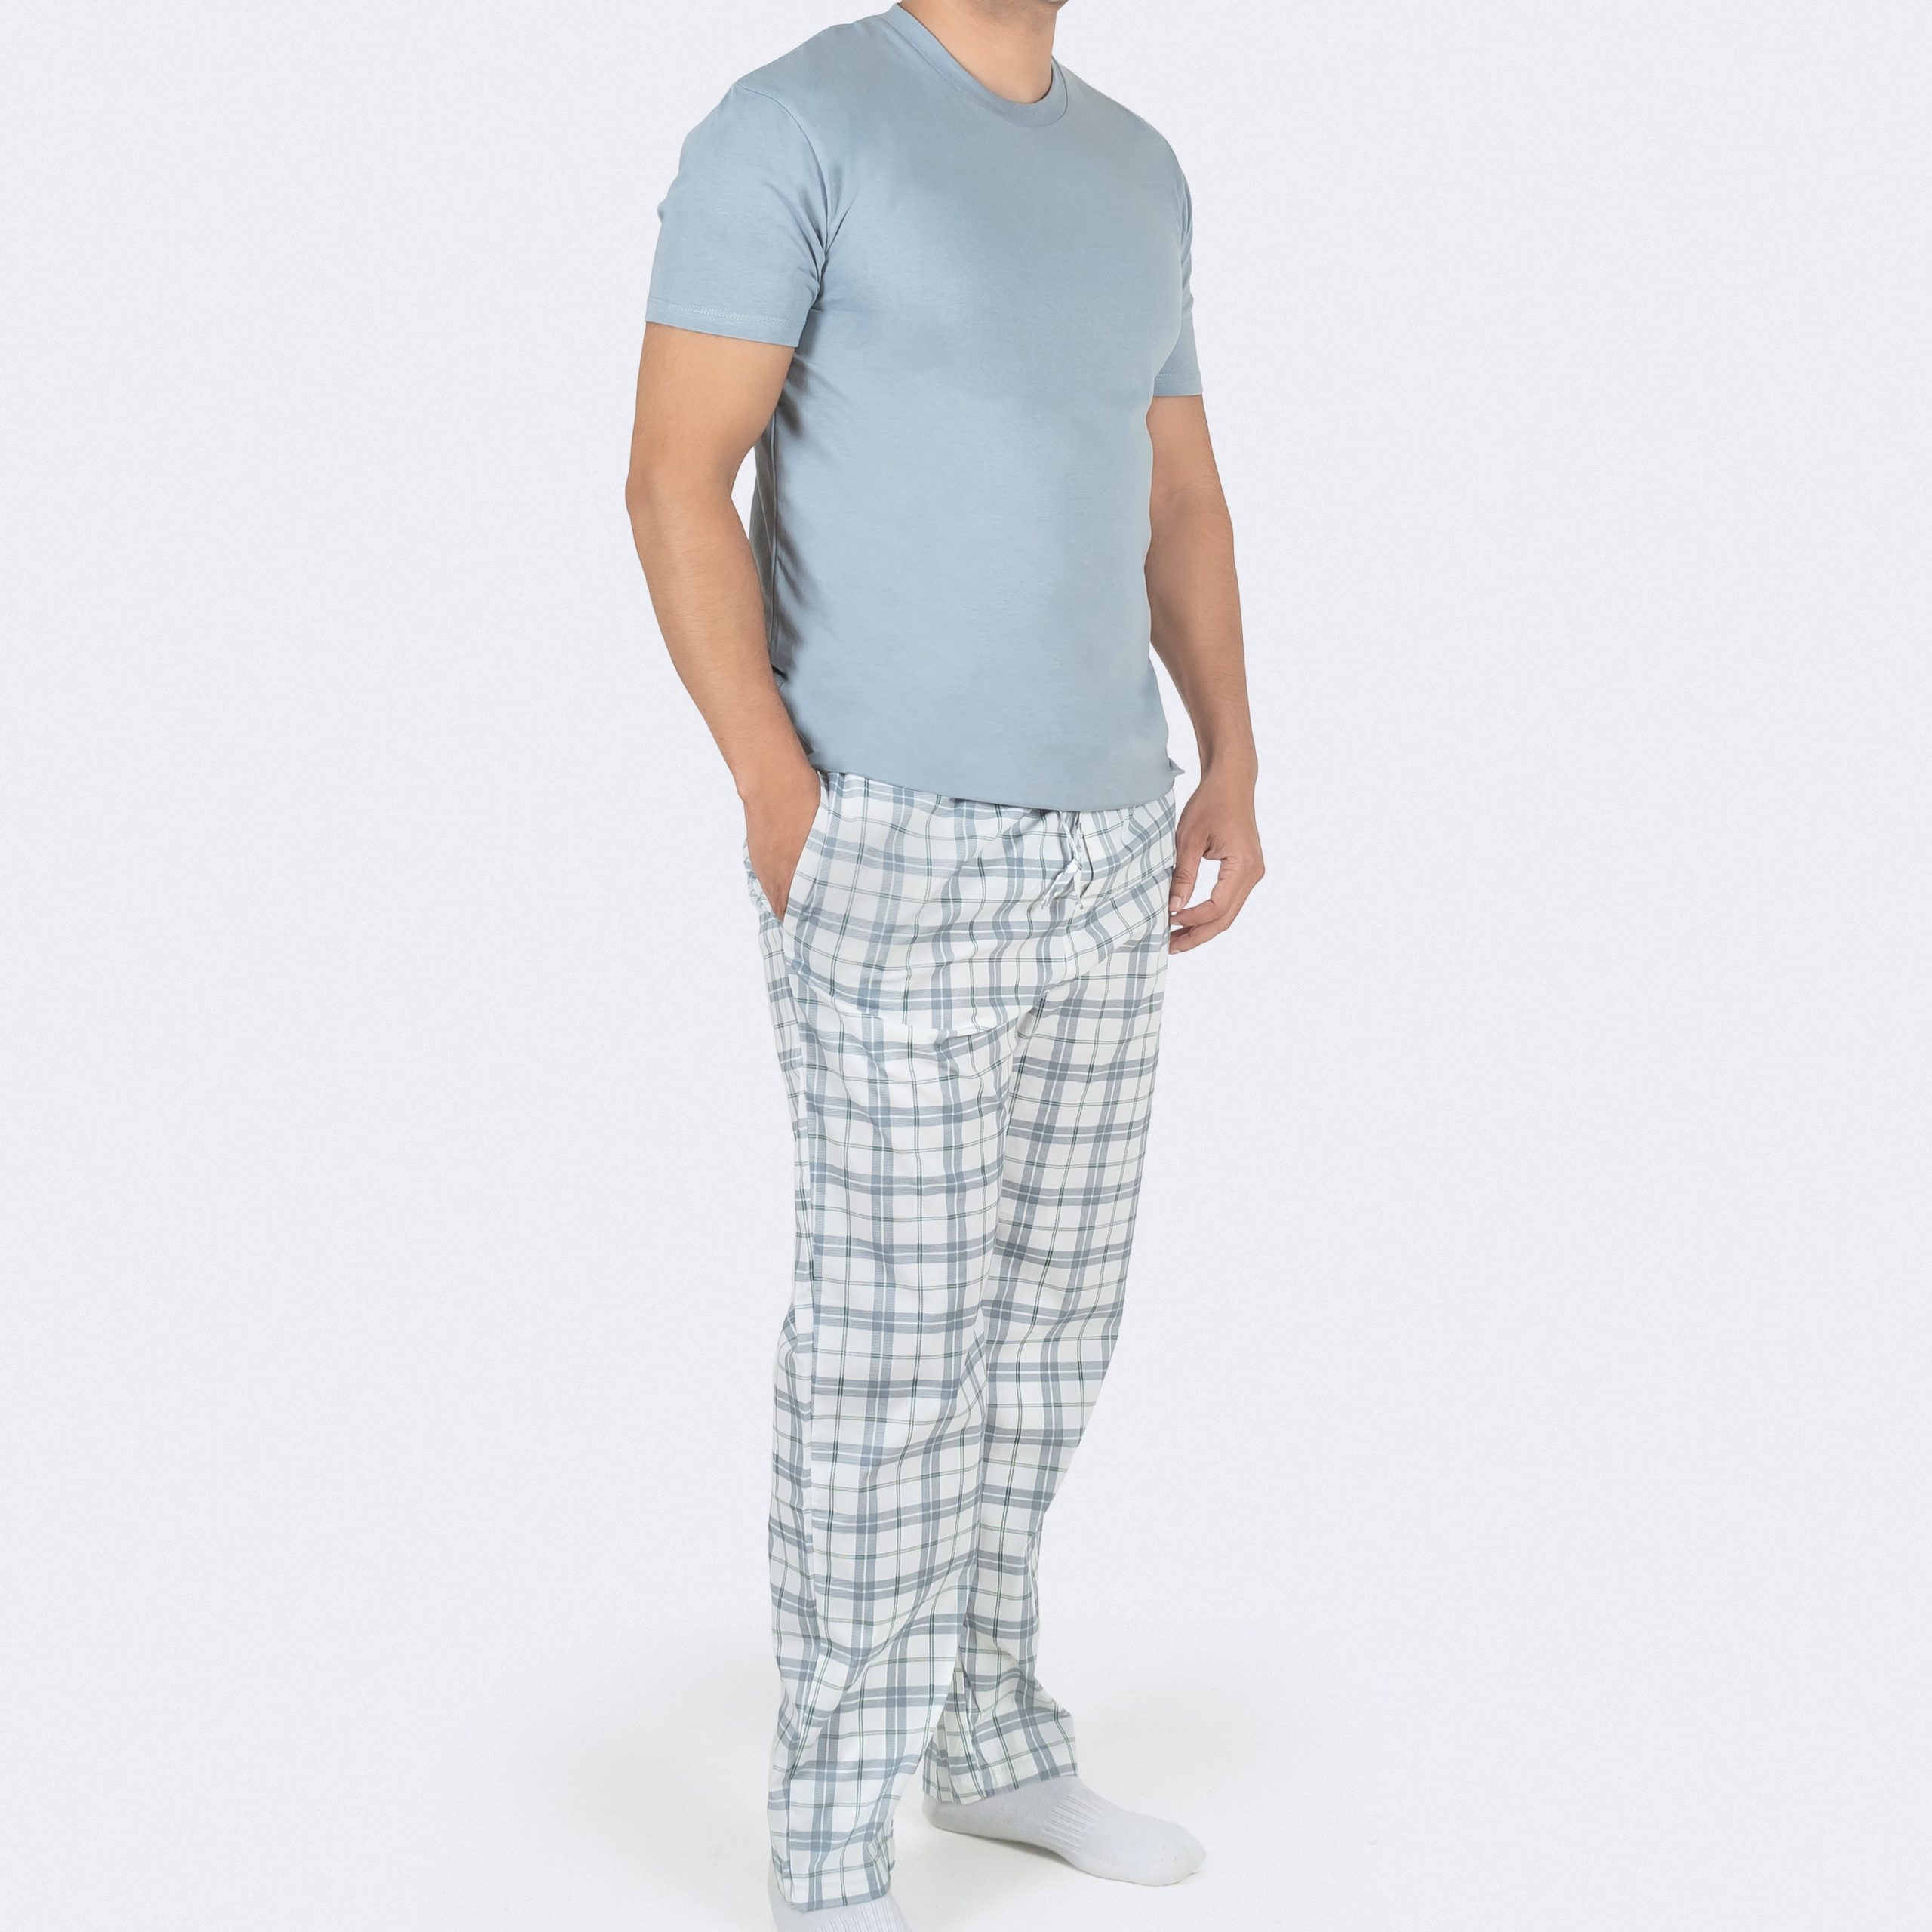 Pantalón Pijama y Remera Para Hombre Cuadros Gris y Aqua - PILAR